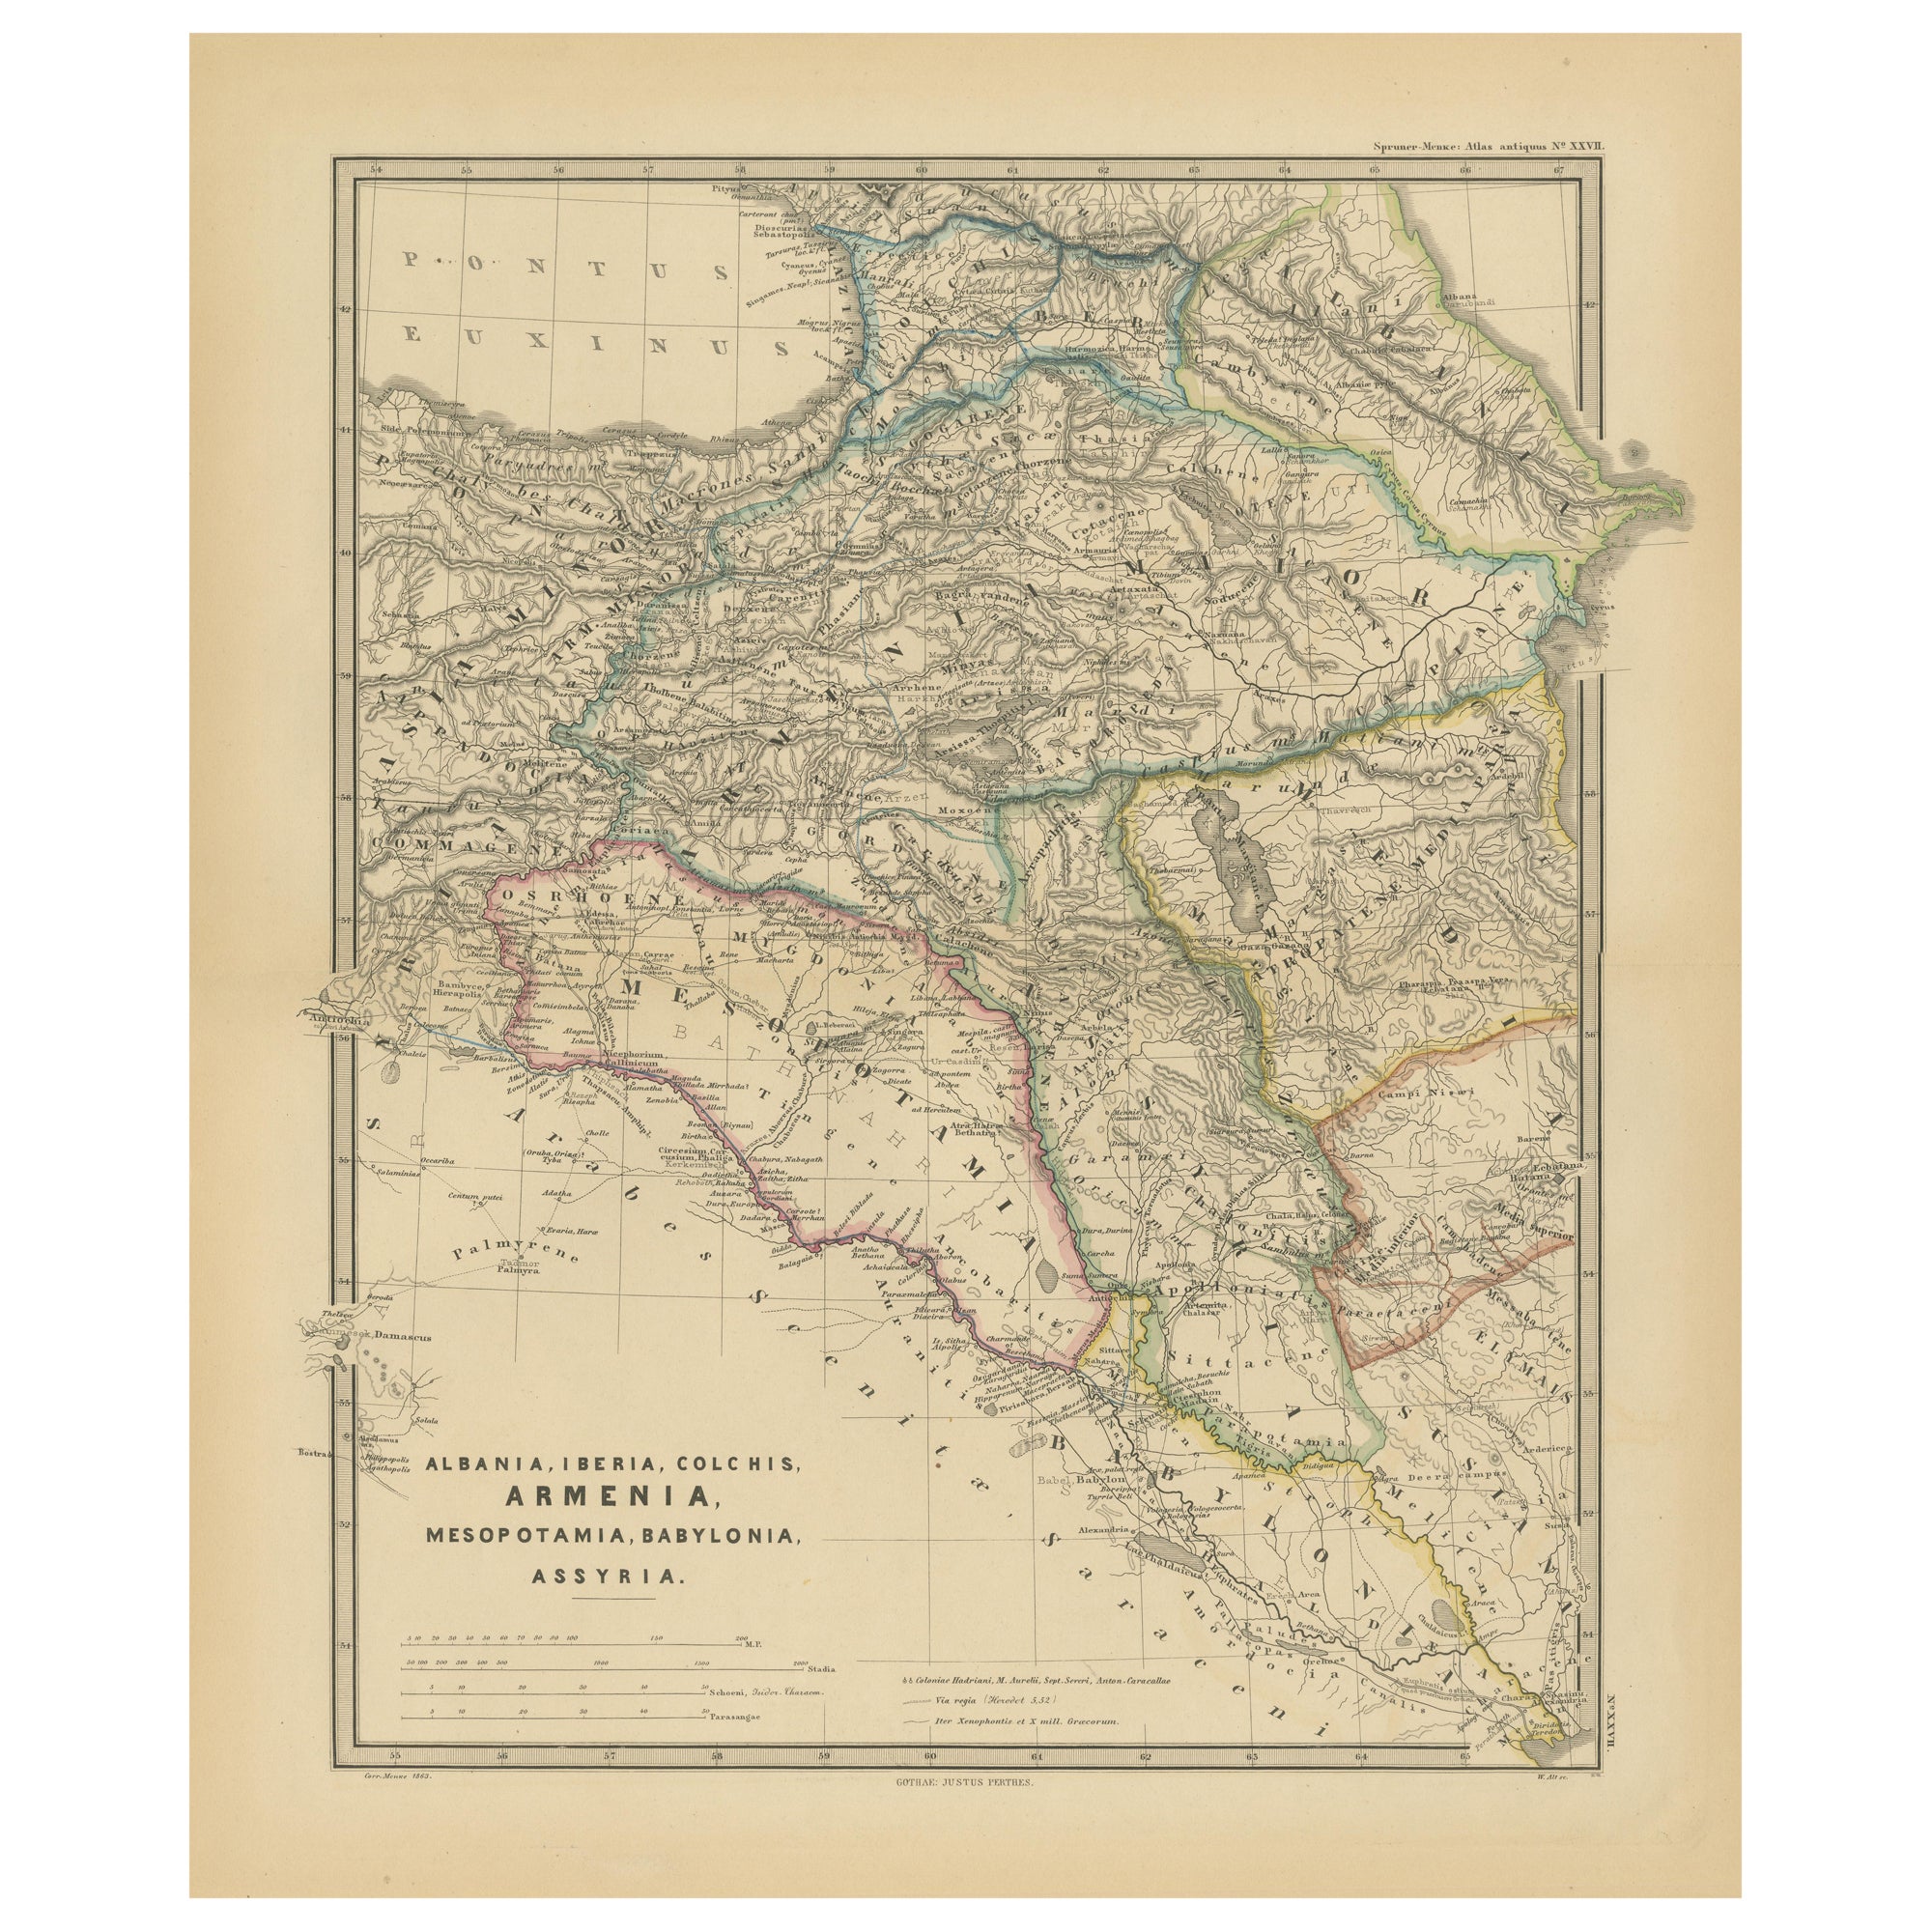 Ancient Crossroads: Albania to Assyria in der Antike, veröffentlicht 1880